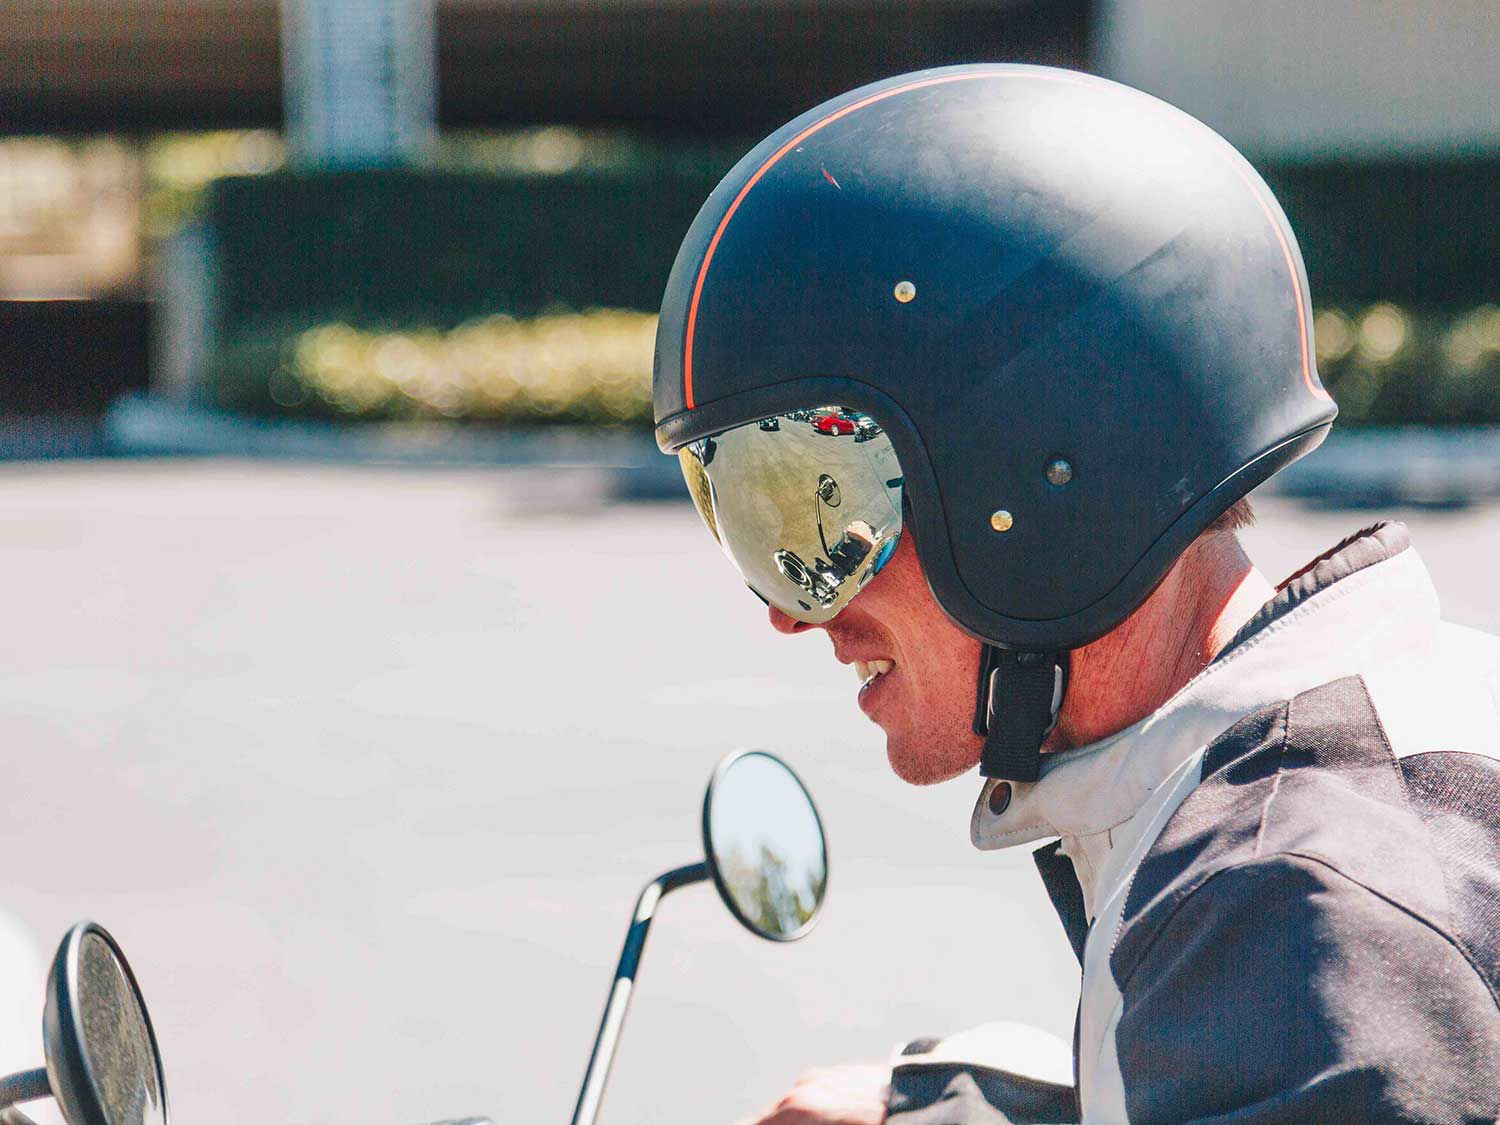 Shoei JO Motorcycle Helmet Review | Motorcyclist